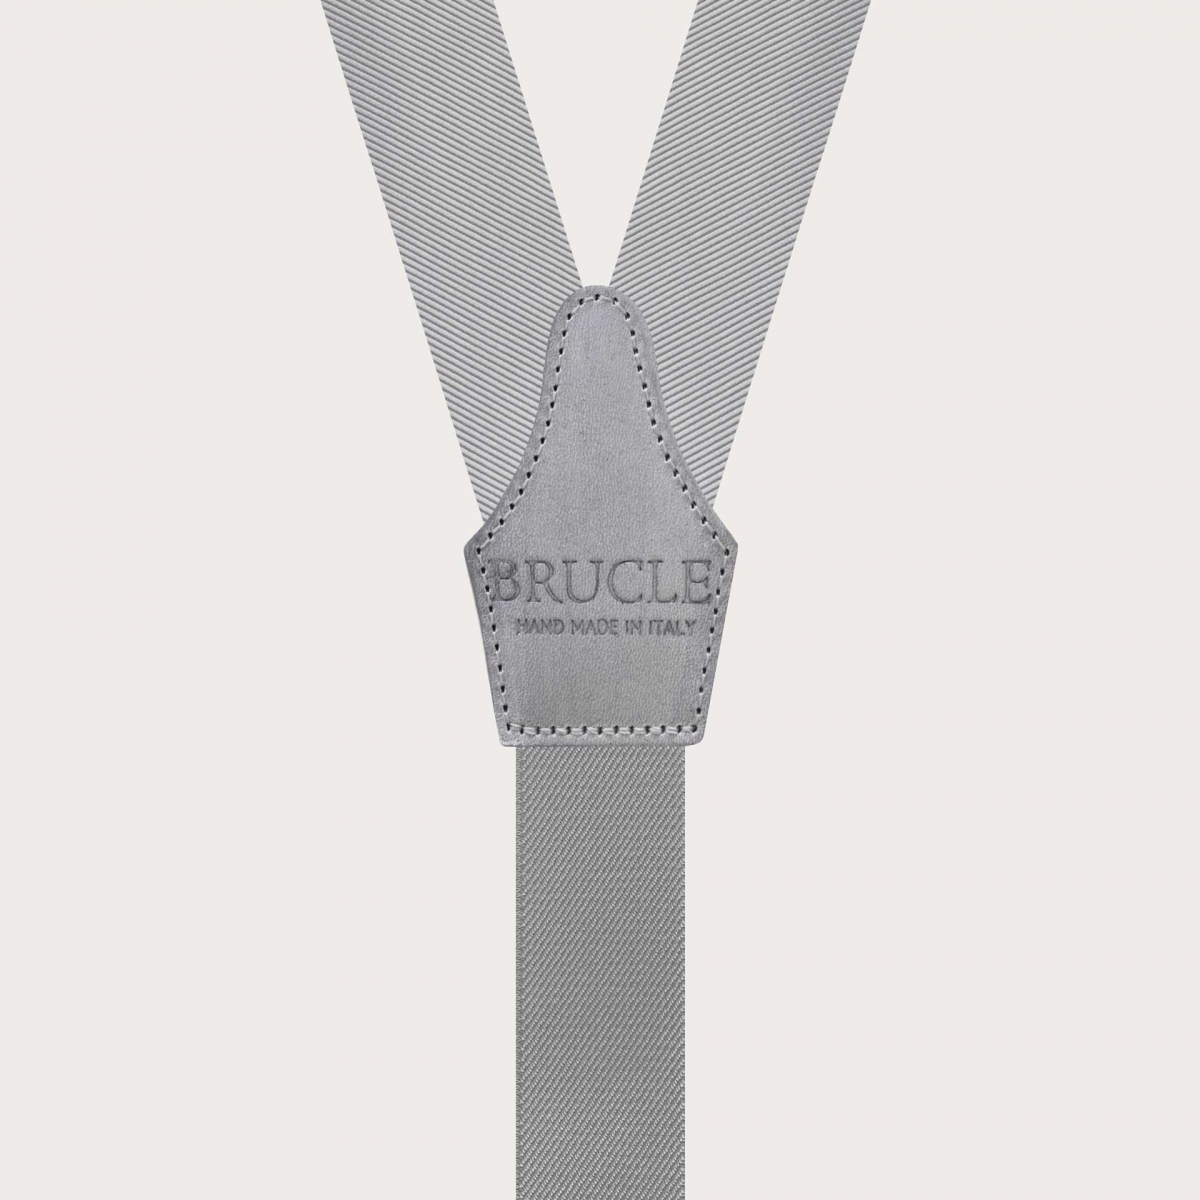 BRUCLE Formal Y-shape suspenders with braid runners, grey